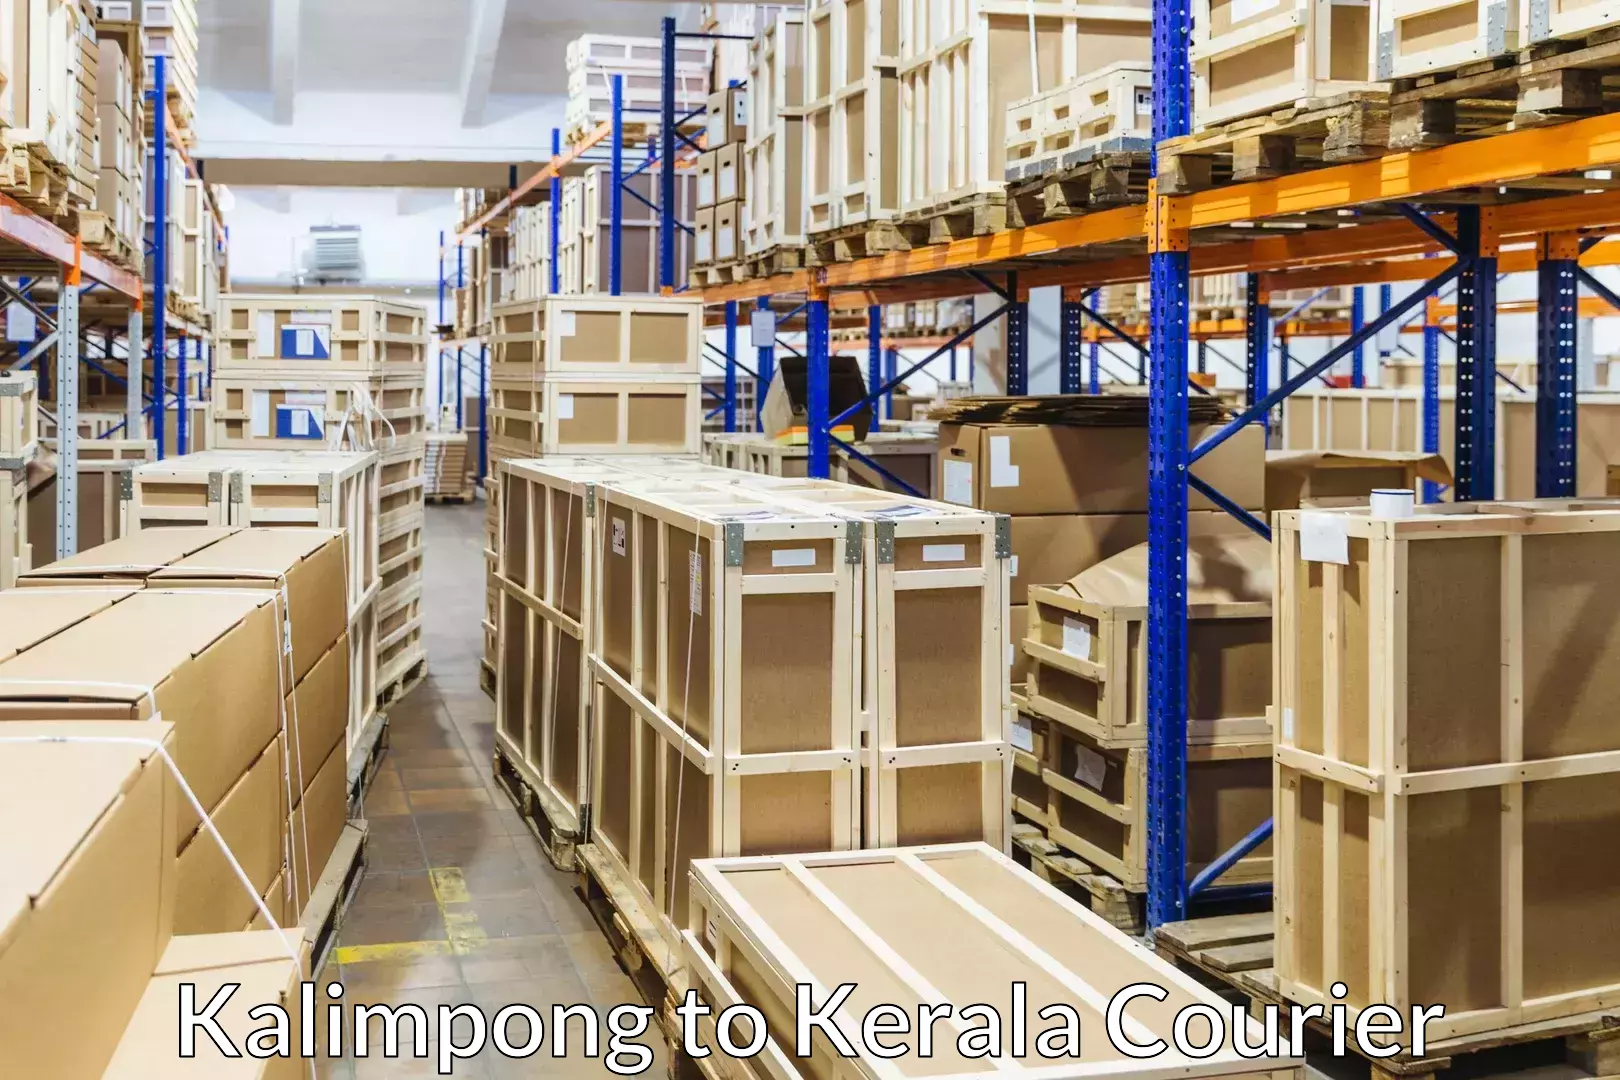 Furniture transport service Kalimpong to Kerala